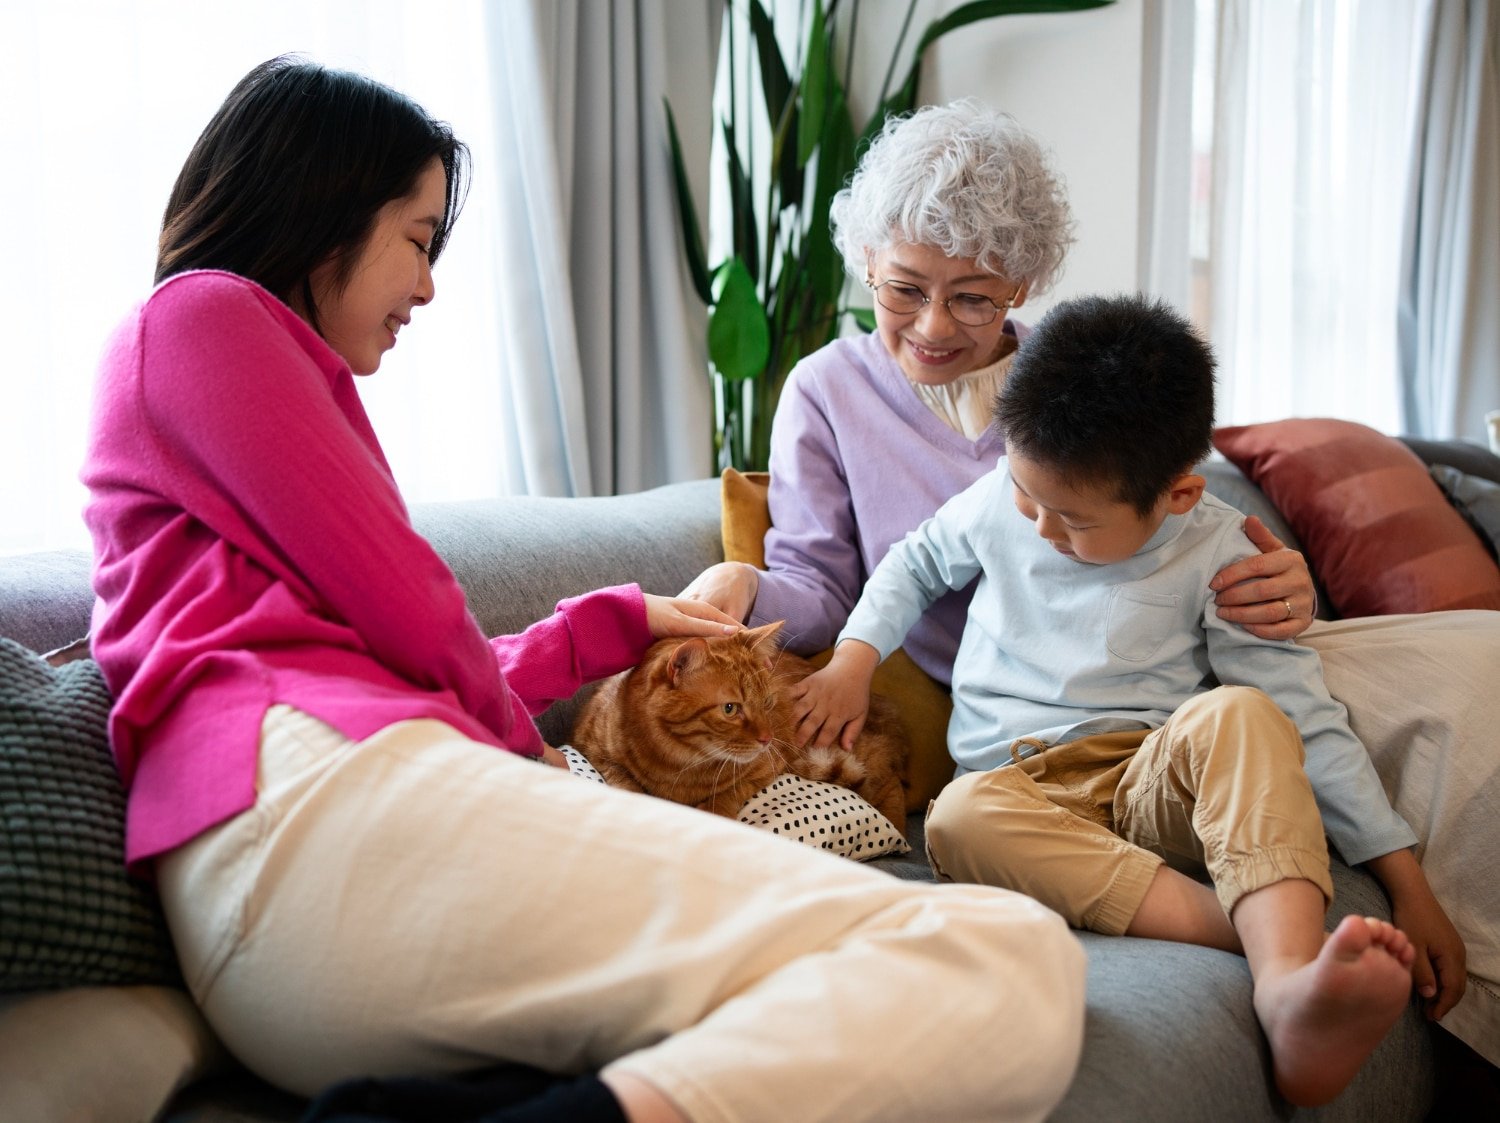 Care.com Caregiving Services for Families